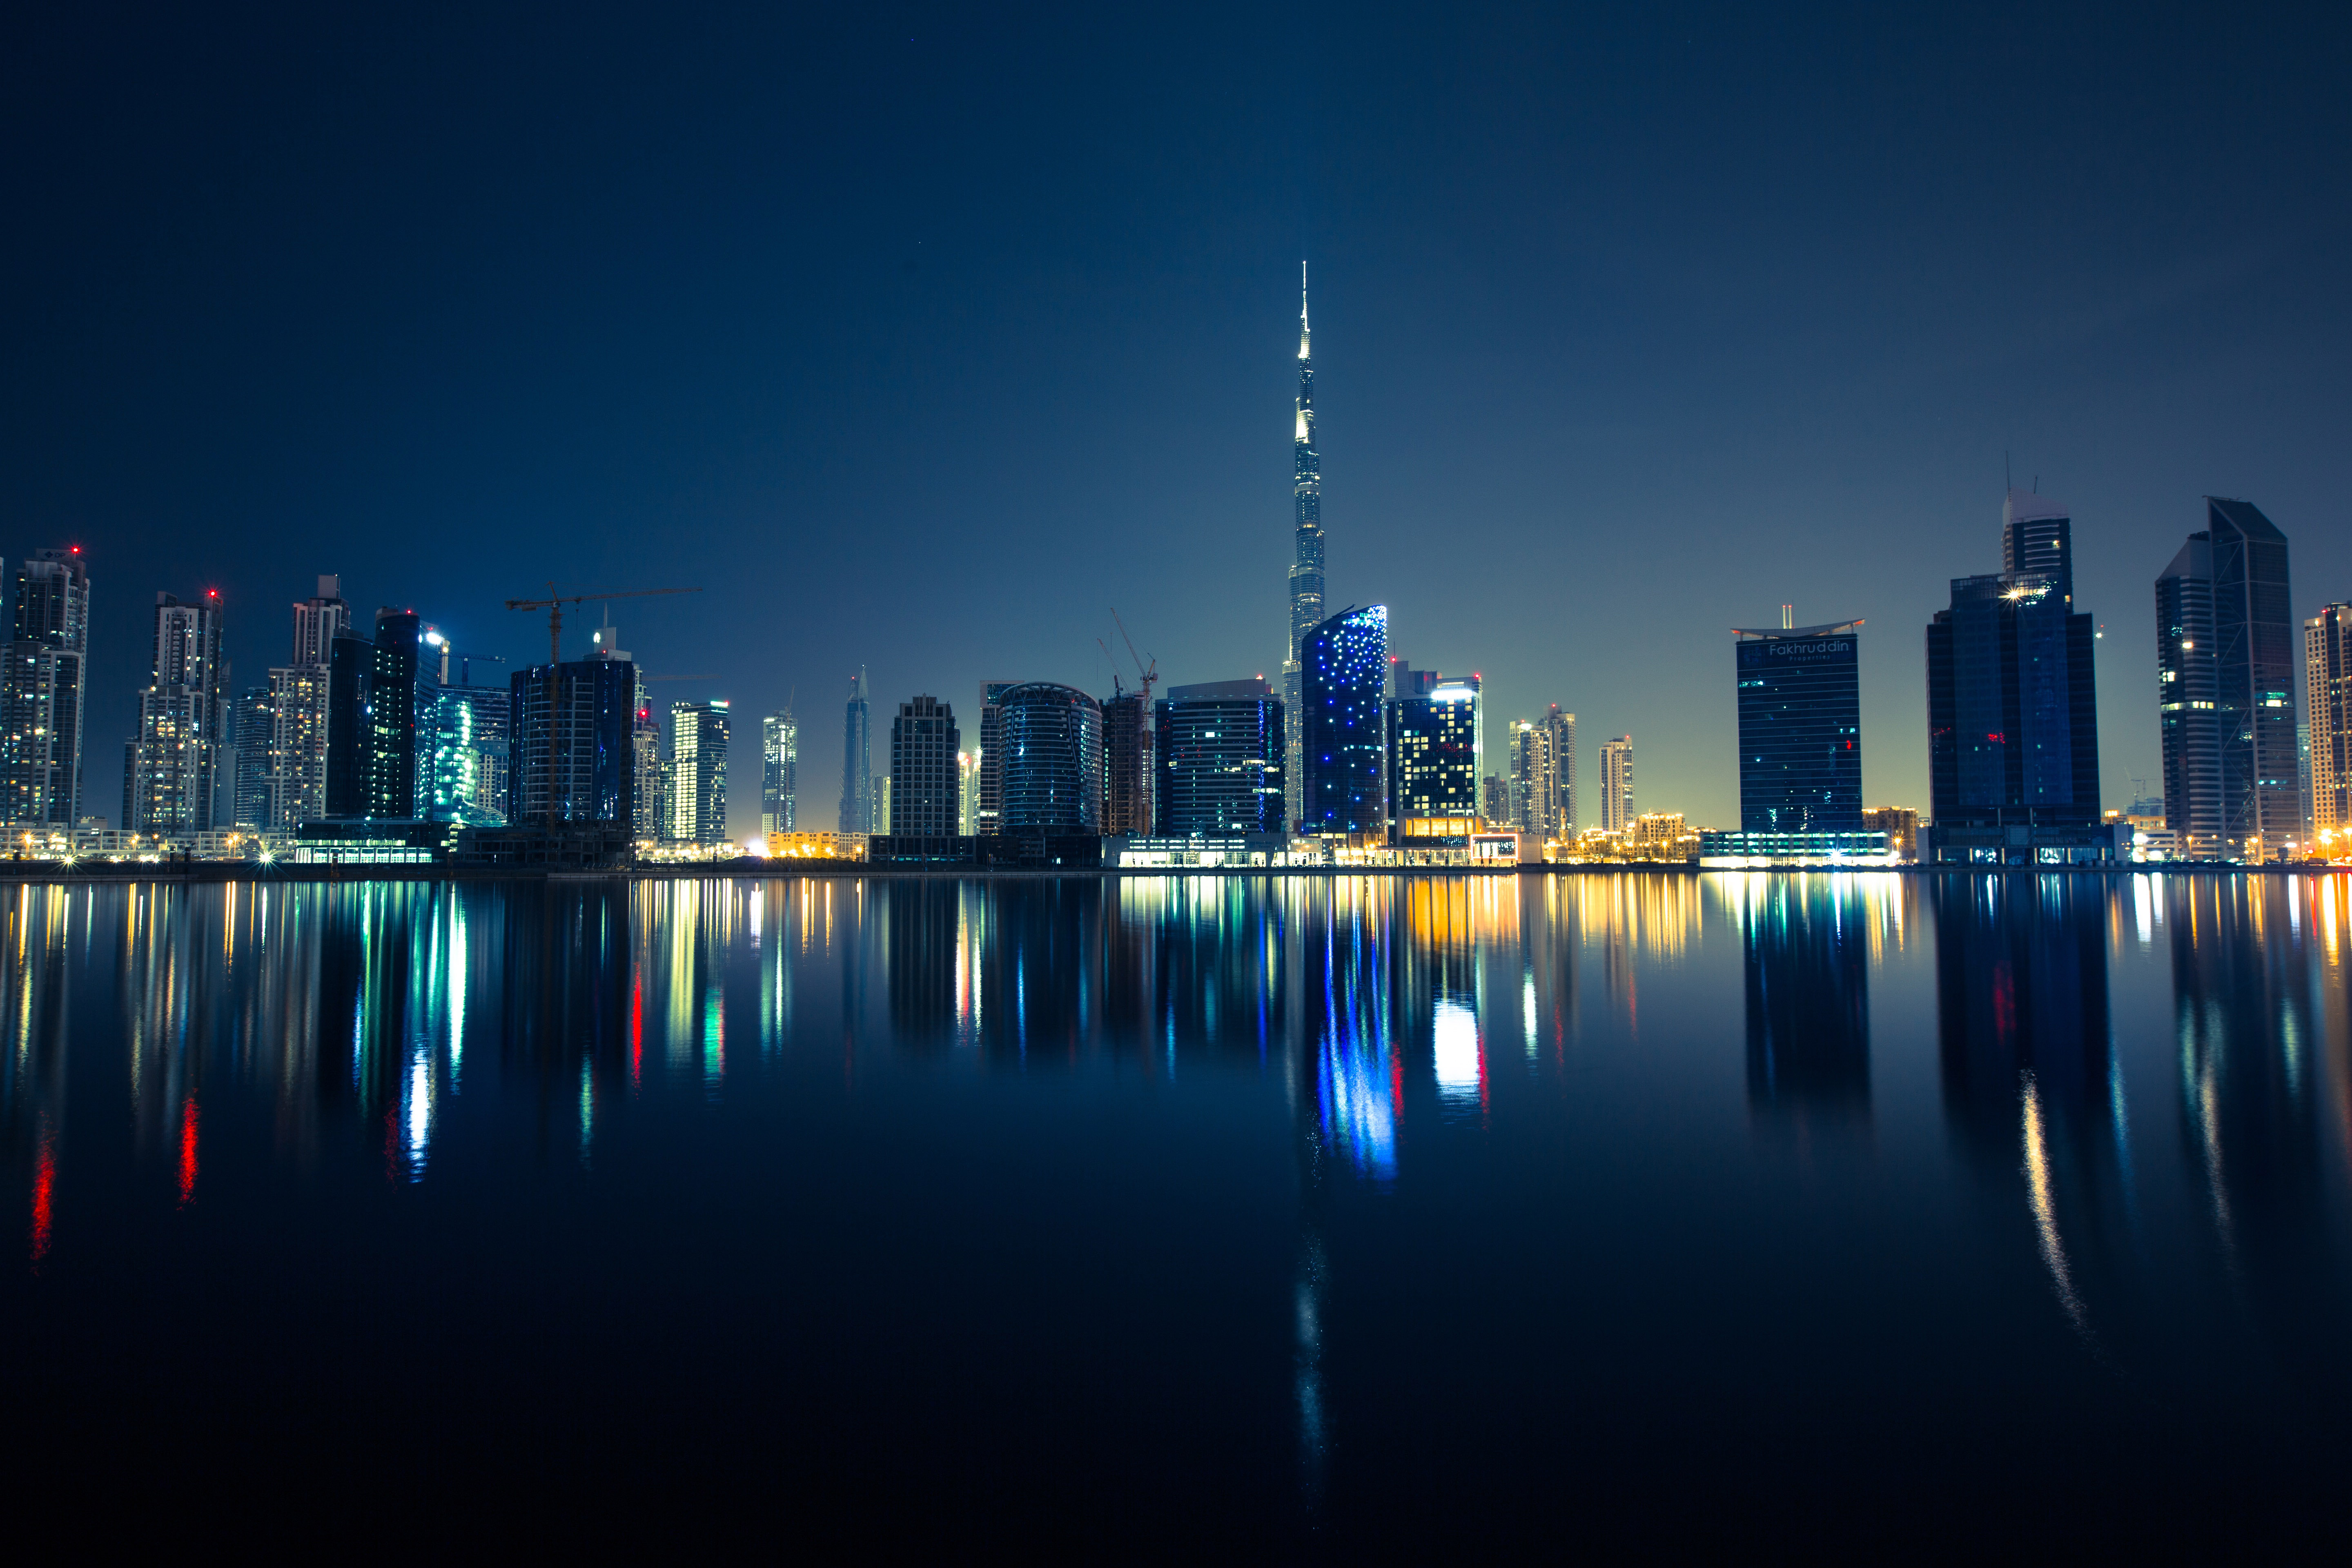 Night Skyline in Dubai, United Arab Emirates, UAE image - Free stock photo - Public Domain photo ...